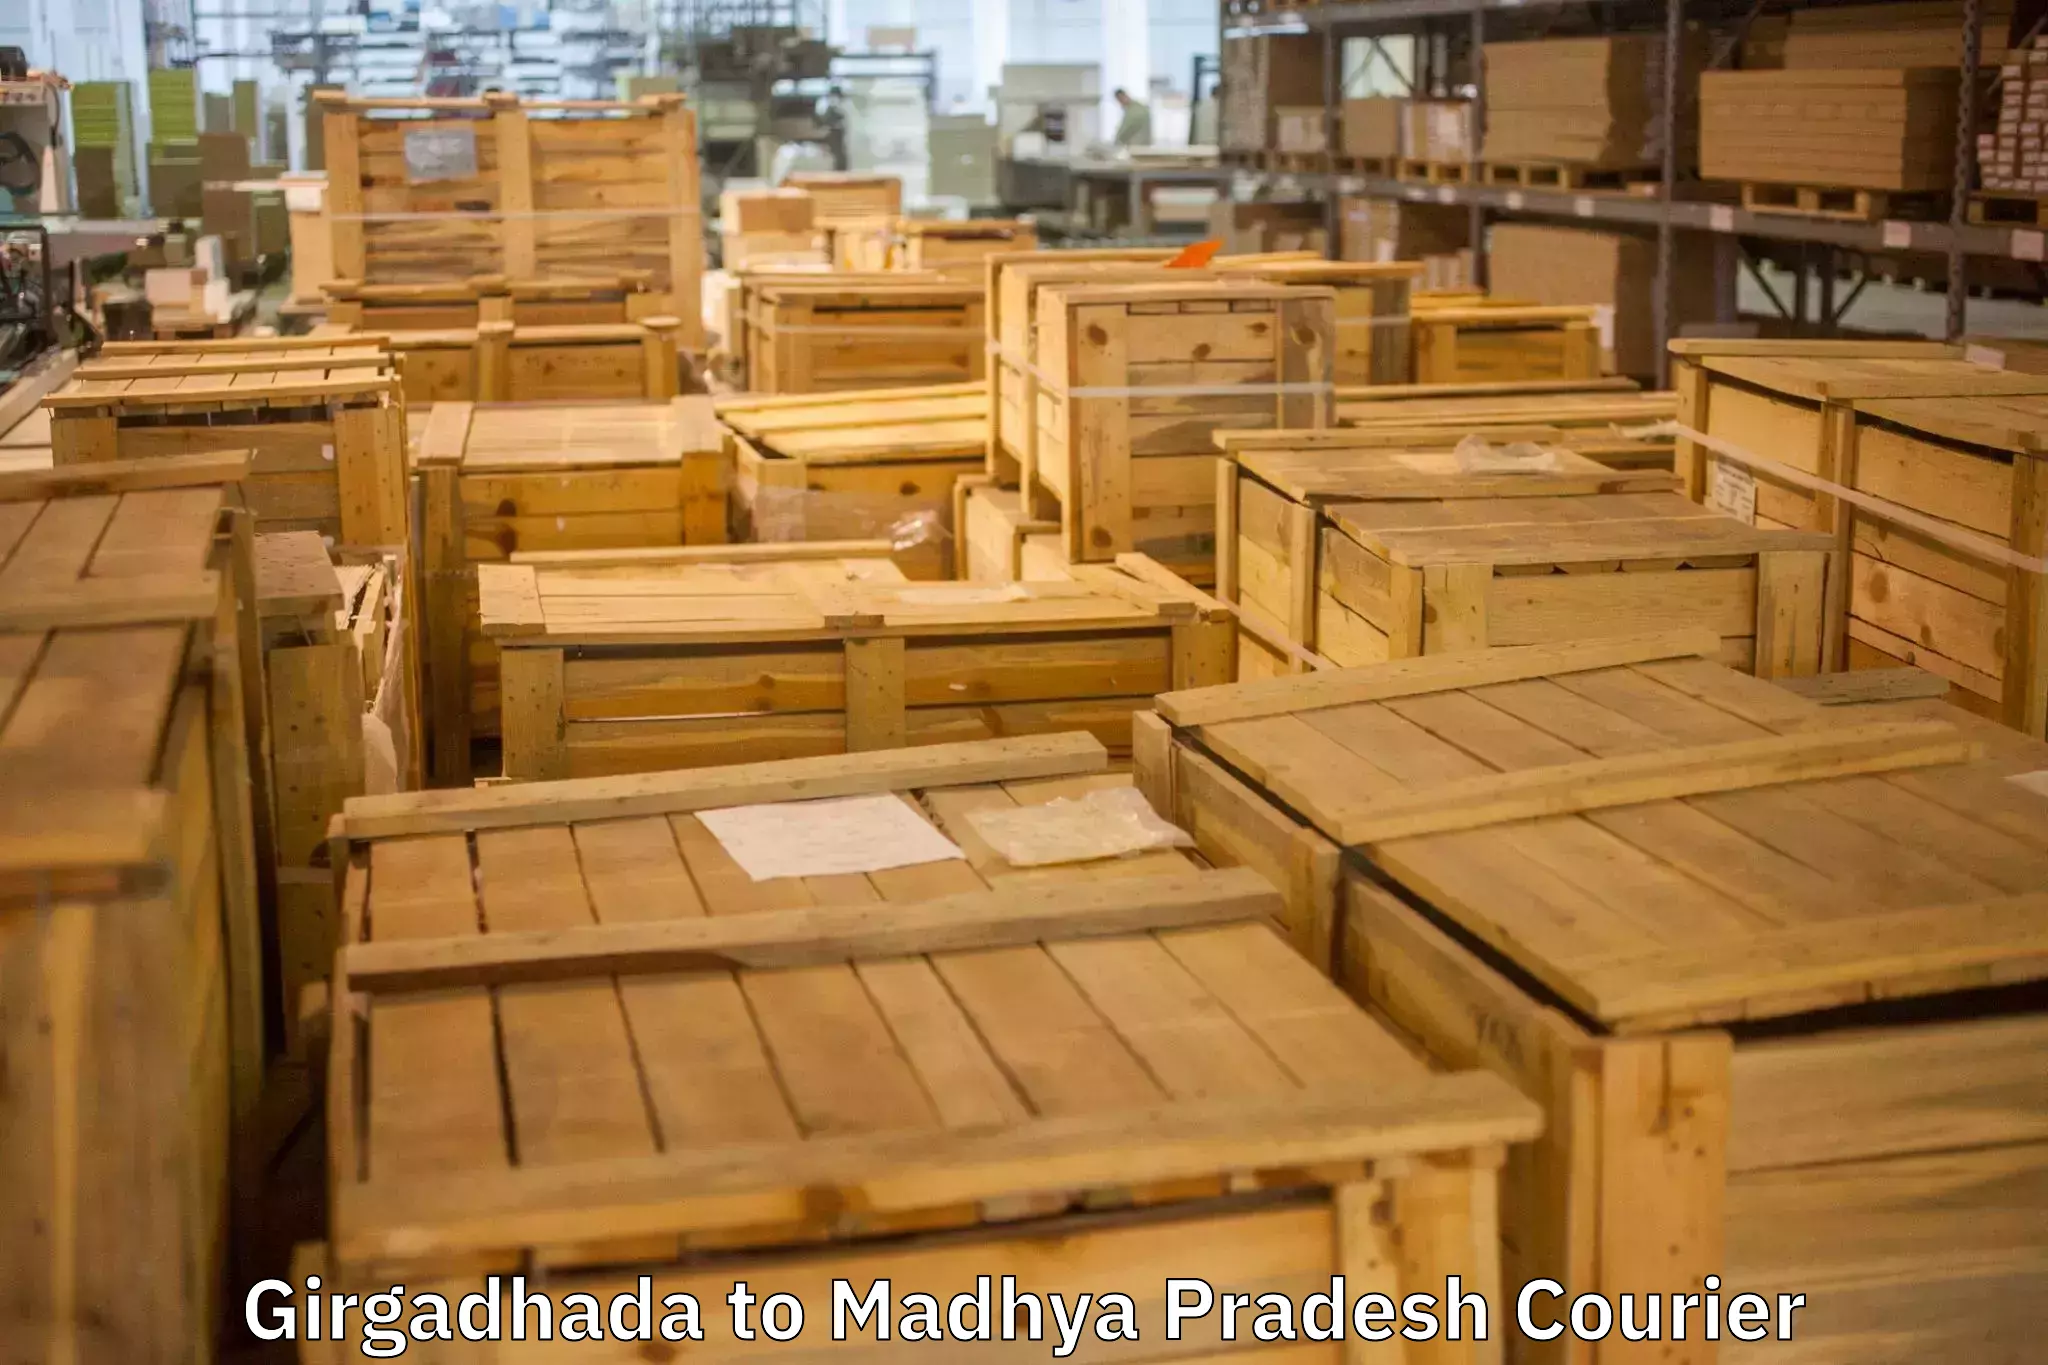 Quality moving company Girgadhada to Sendhwa